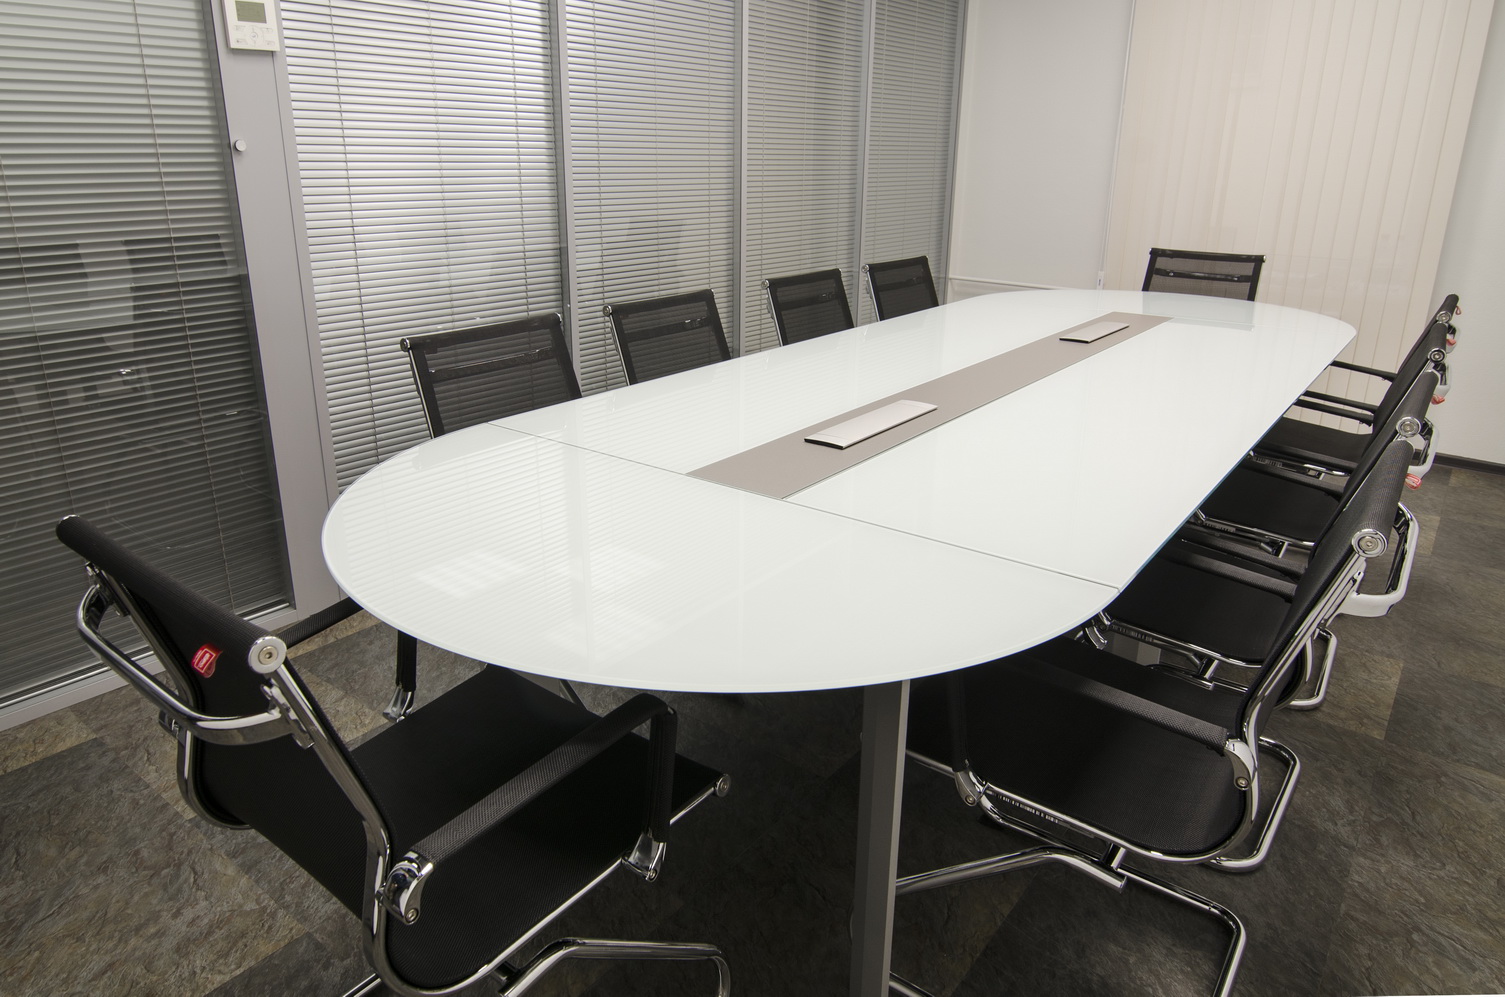 Стеклянный стол переговоров овальной формы на 10человек со столешницей из белого стекла и встроенными розетками